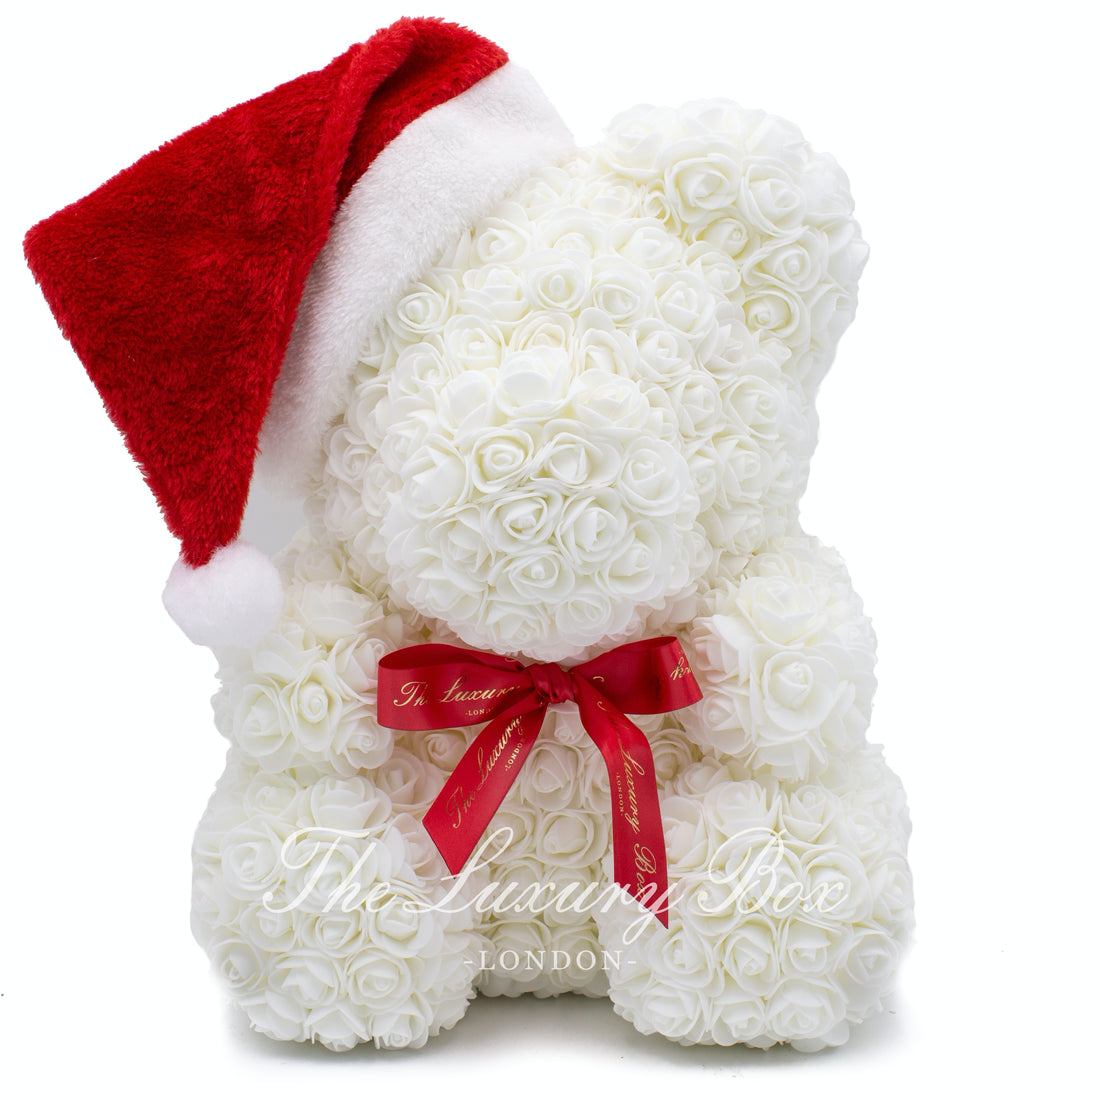 White rose bear christmas